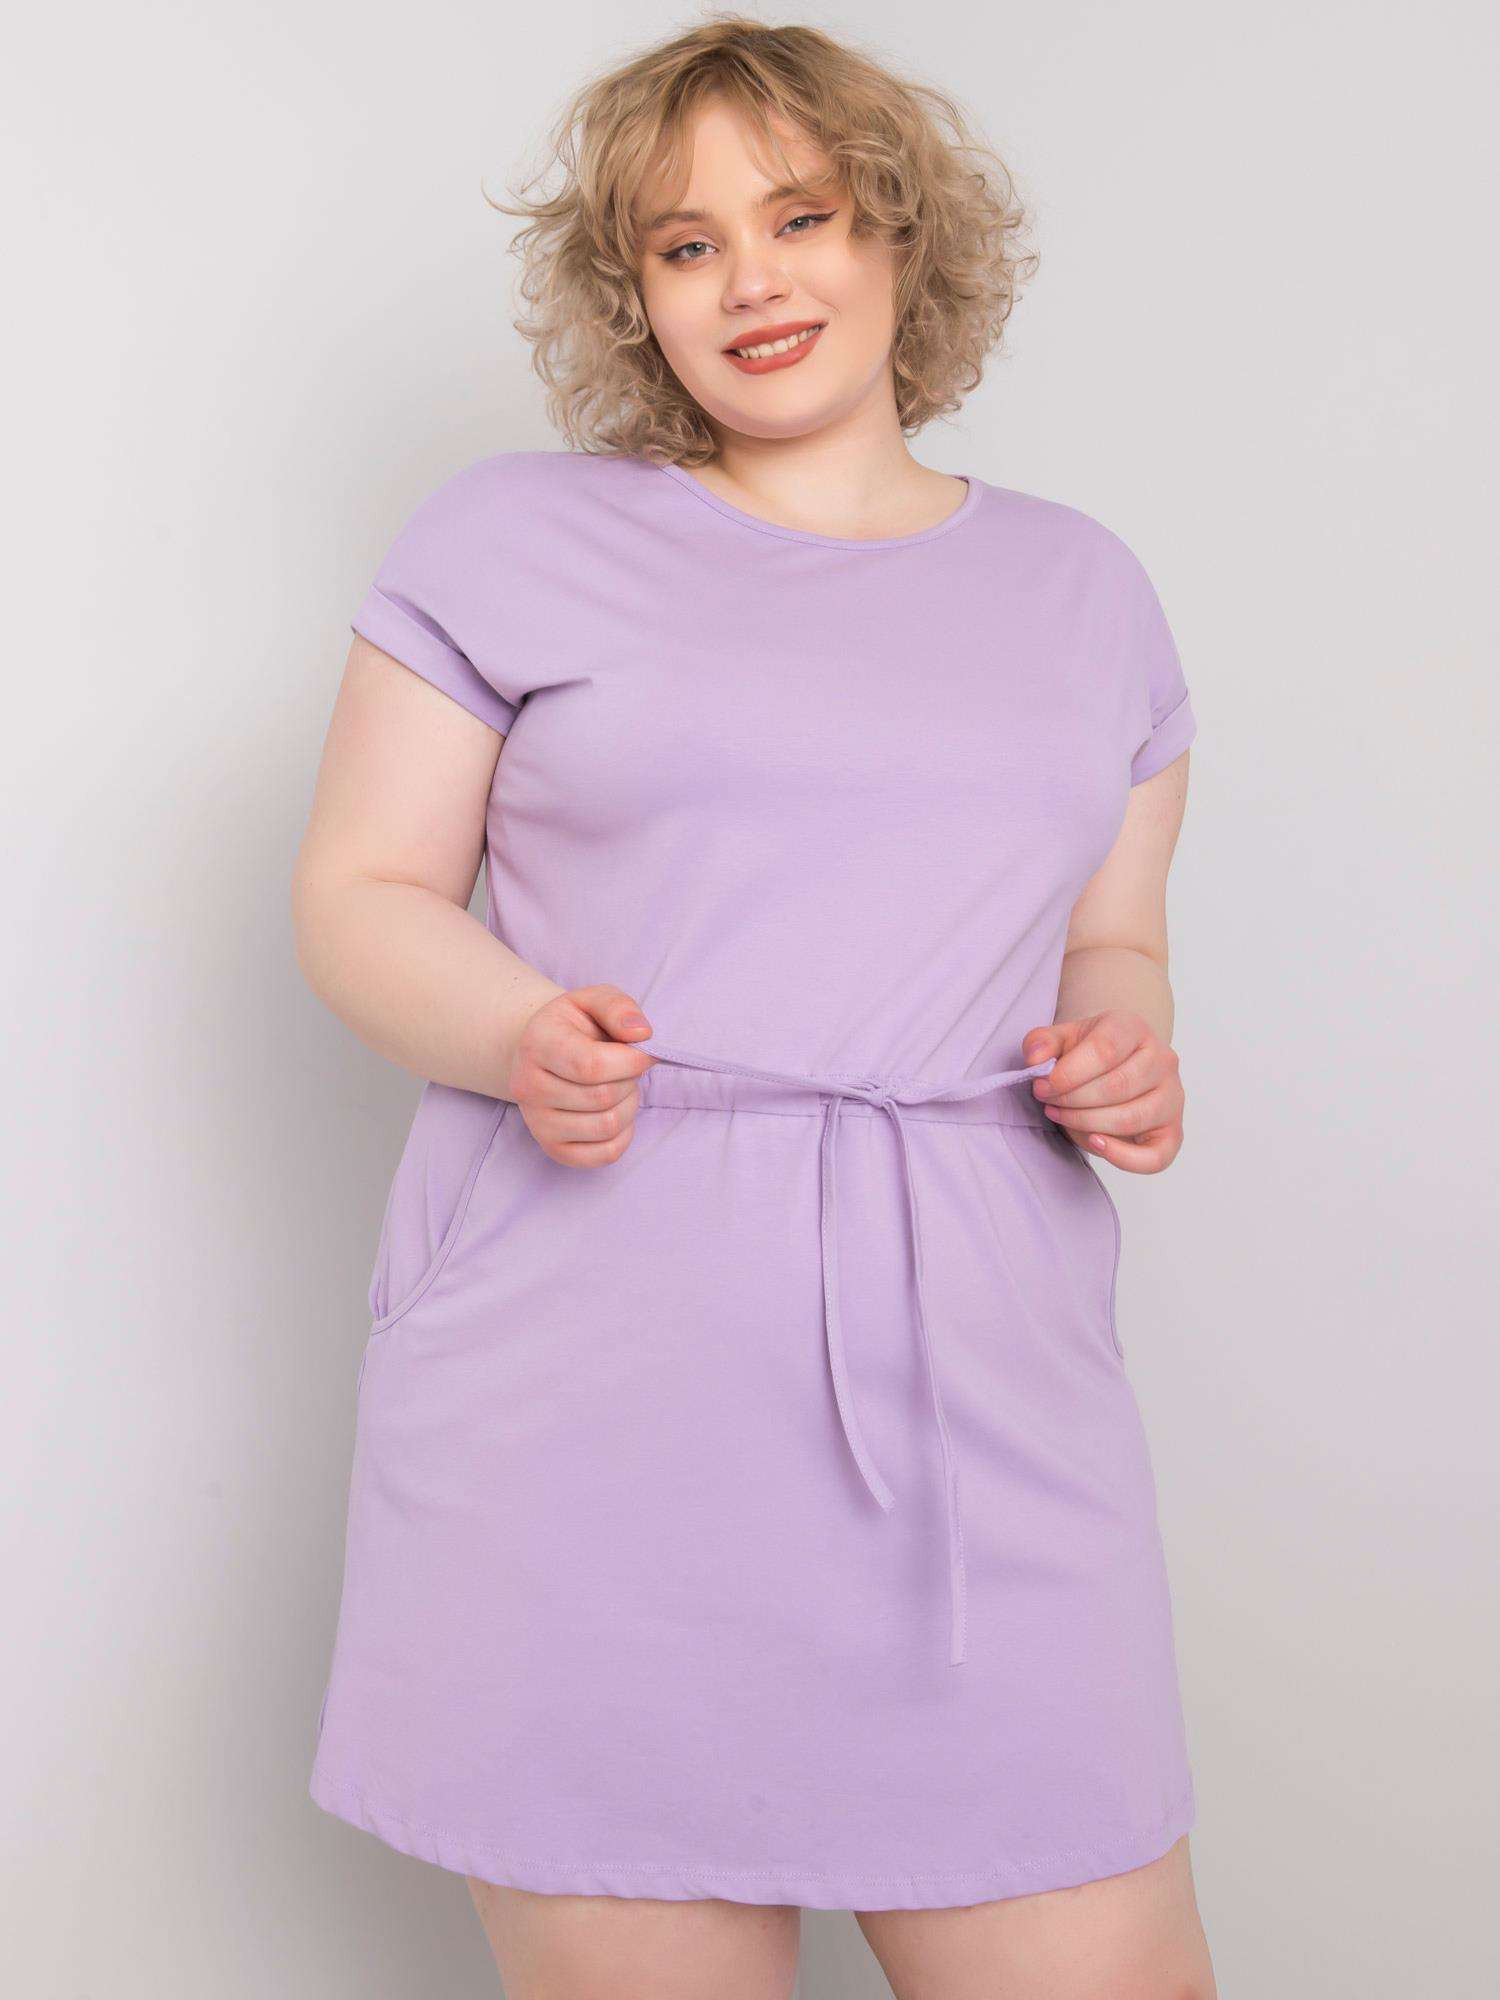 Světle fialové bavlněné šaty plus velikosti XL